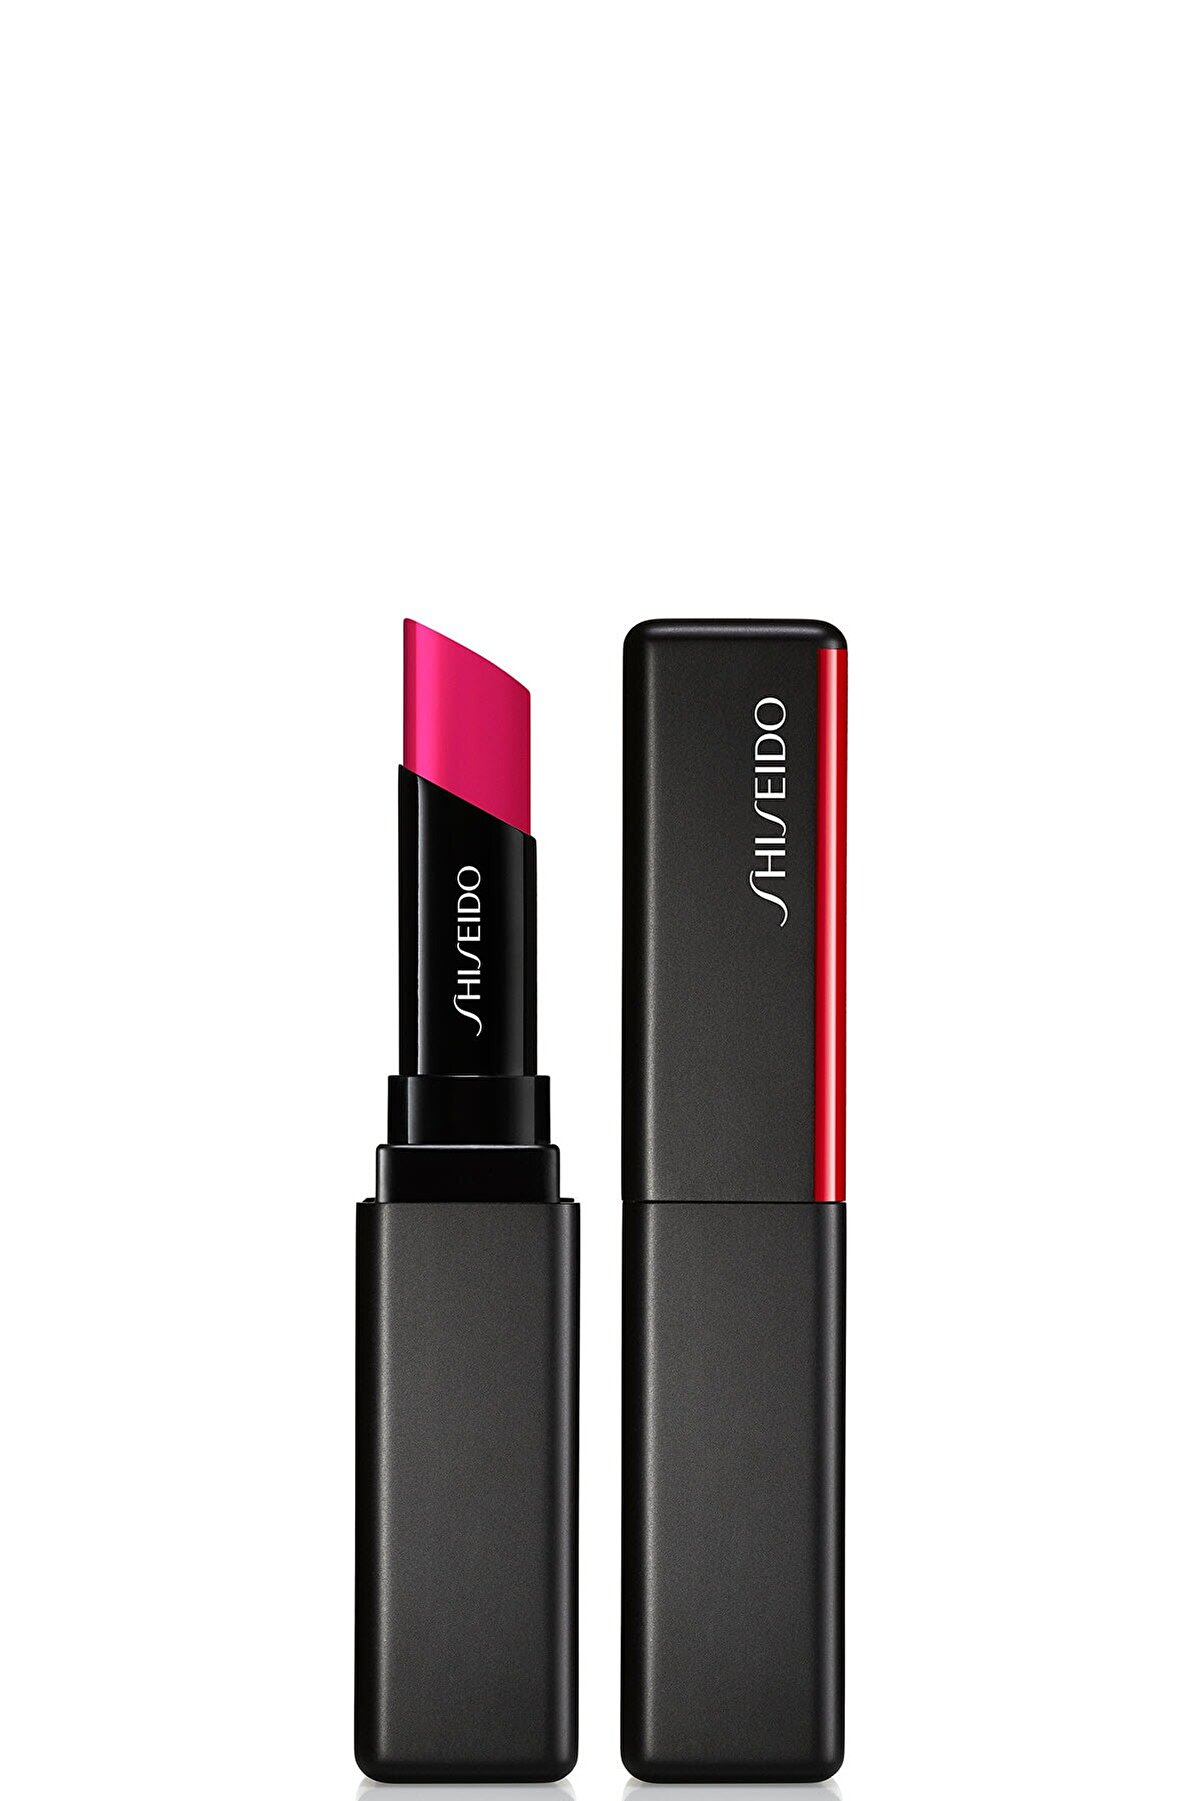 Shiseido Kalıcı Nemlendirici Ruj - SMK Visionairy Gel Lipstick 214 729238151918